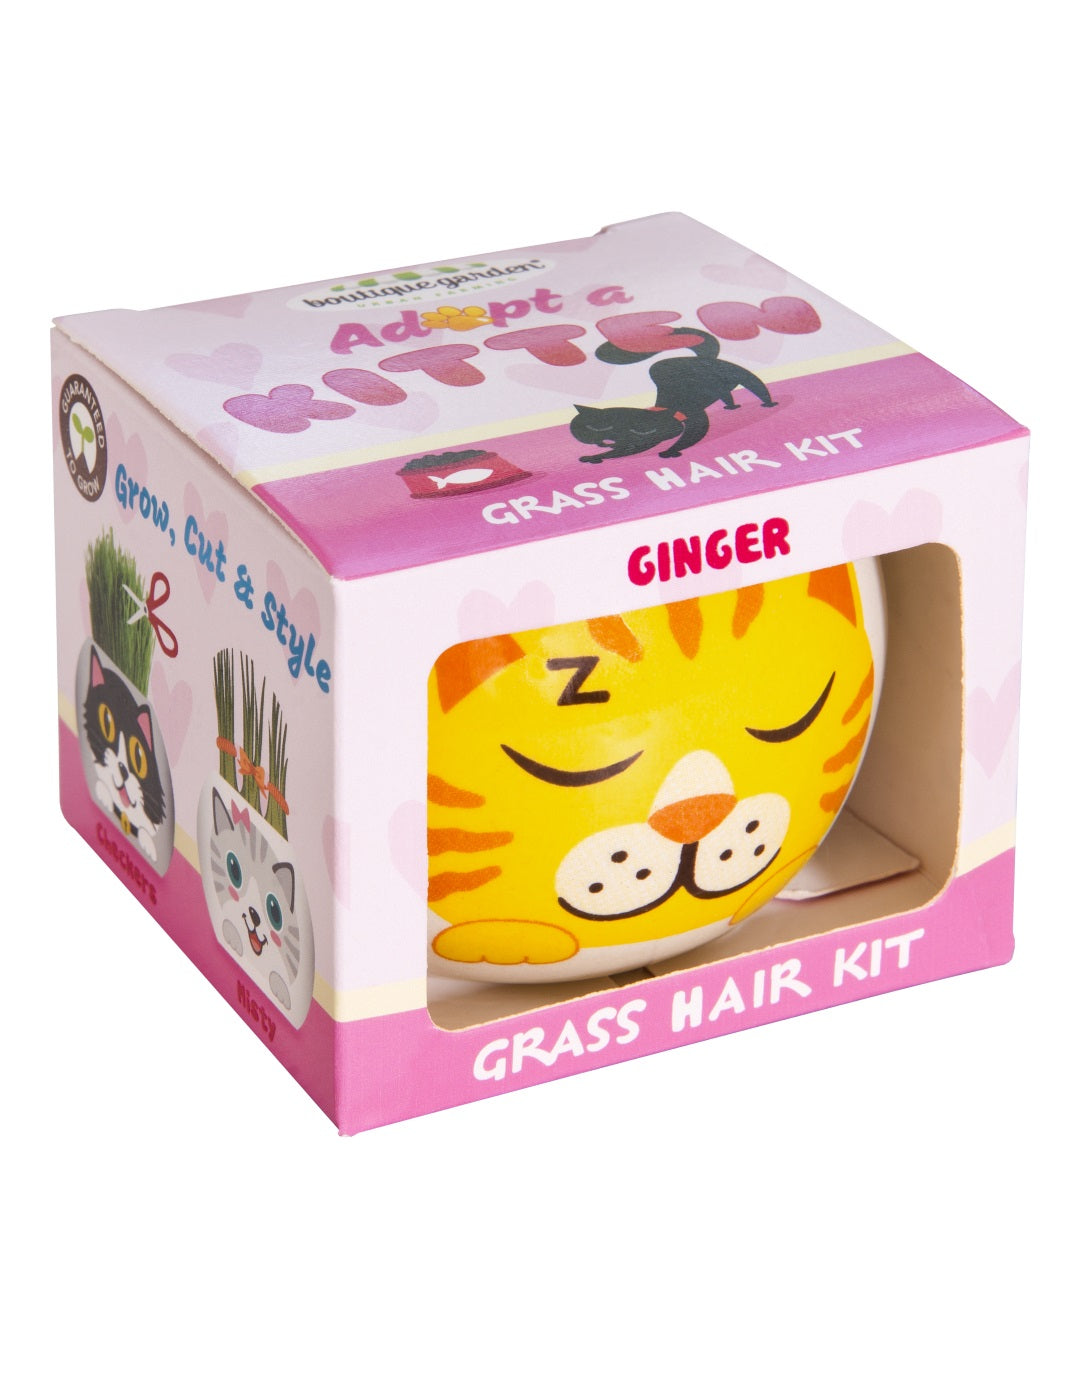 Grass Hair Kit - Kittens (Ginger)